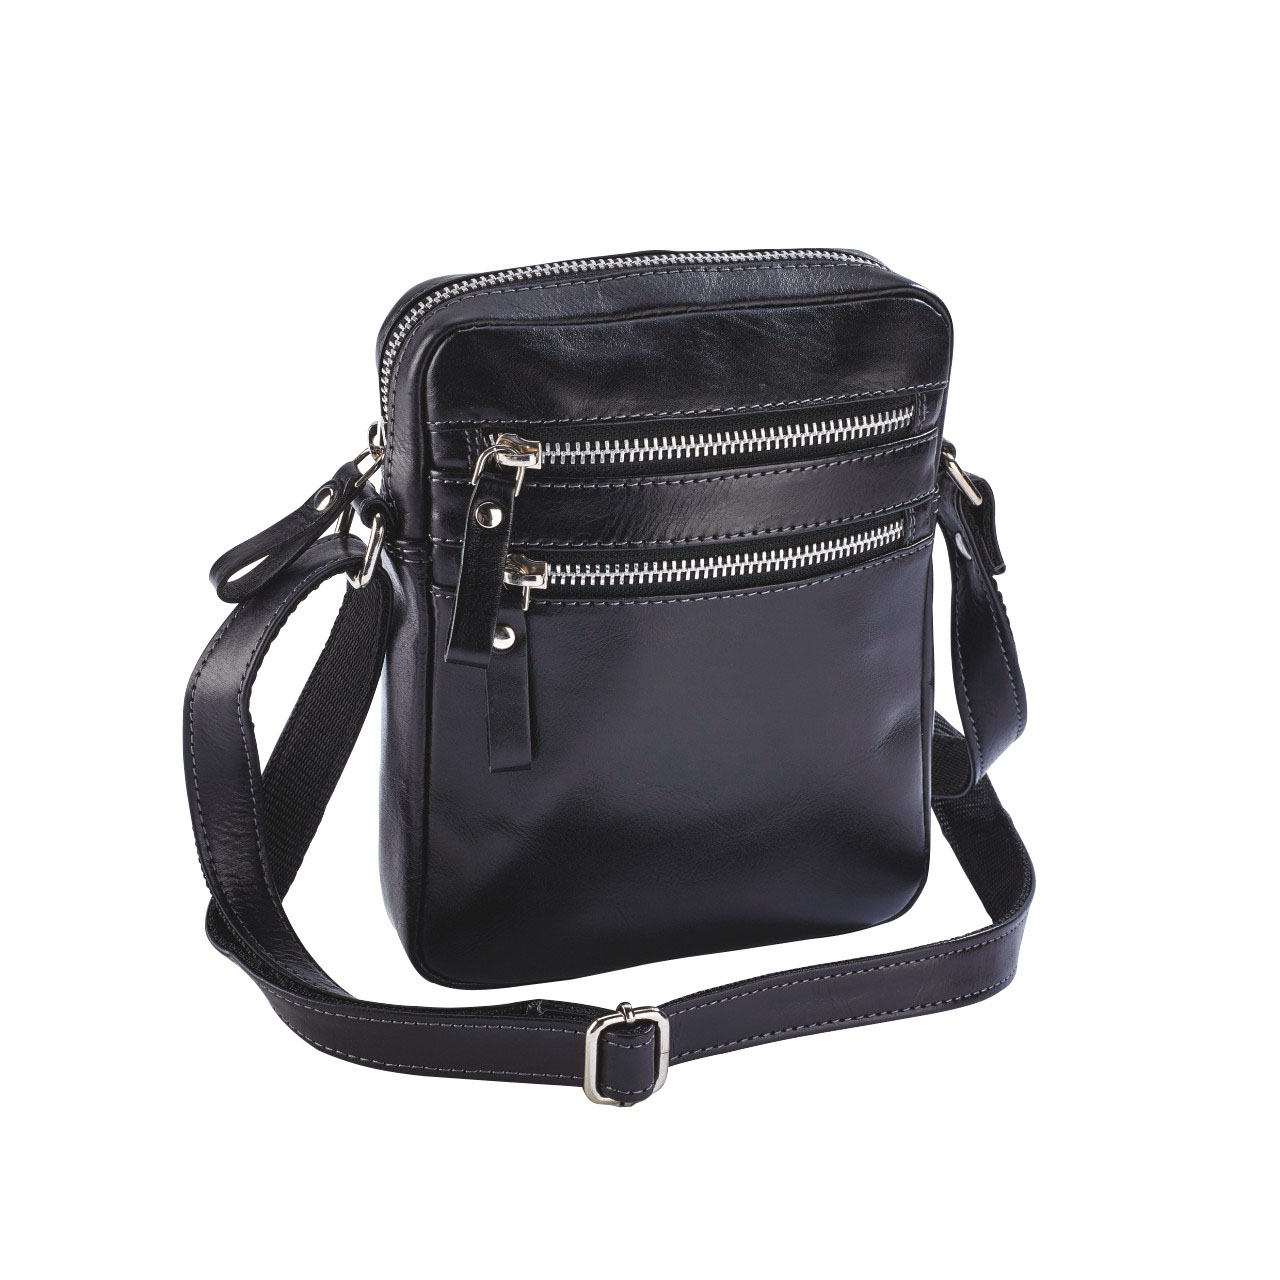 BLACK | Slimline Leather Cross Body Travel Bag | Expert Verdict